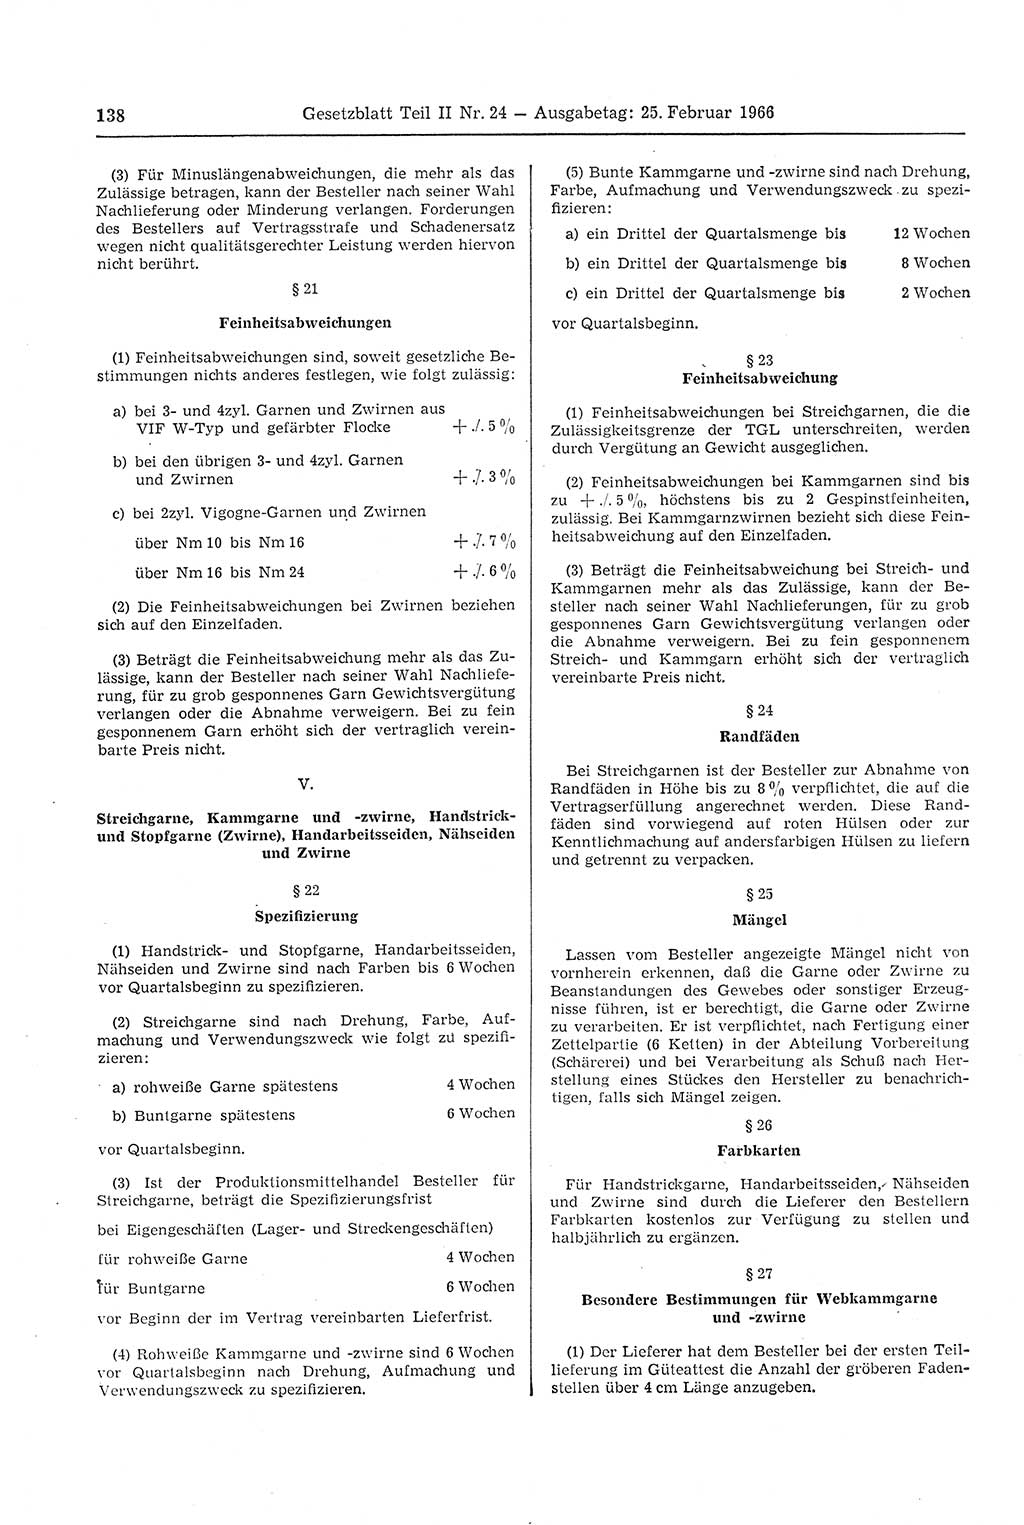 Gesetzblatt (GBl.) der Deutschen Demokratischen Republik (DDR) Teil ⅠⅠ 1966, Seite 138 (GBl. DDR ⅠⅠ 1966, S. 138)